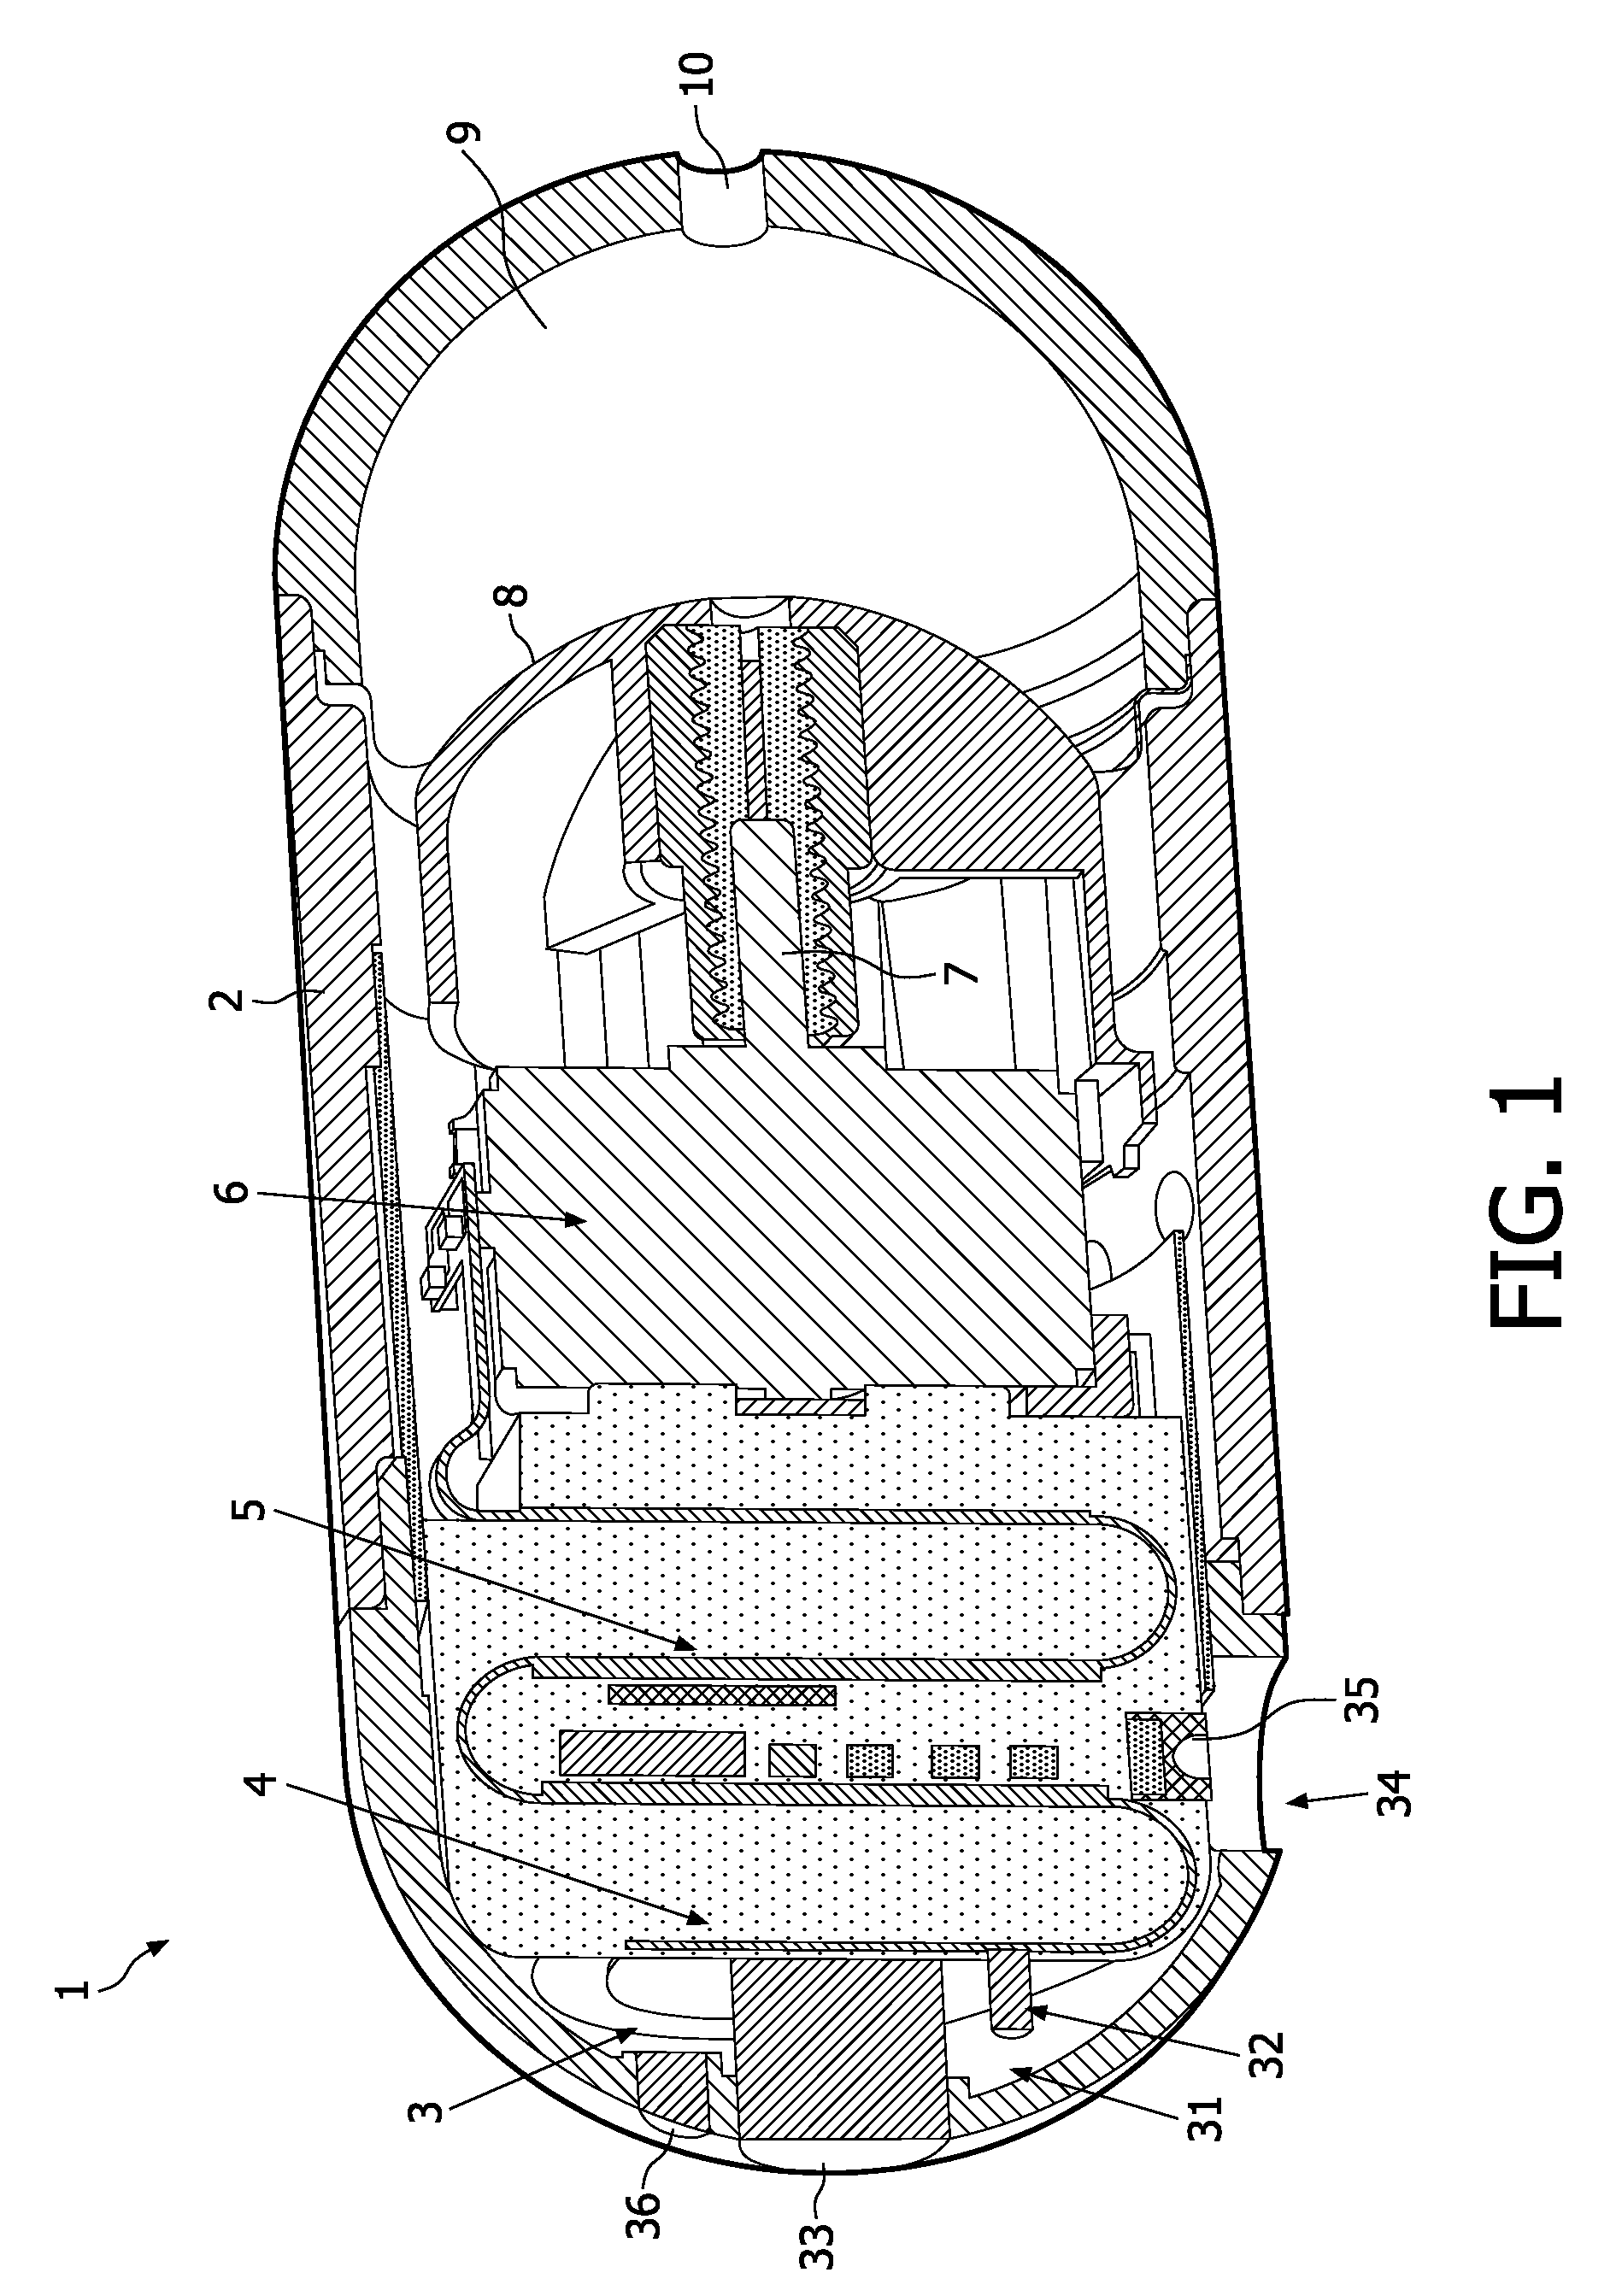 Method of preparing a swallowable capsule comprising a sensor